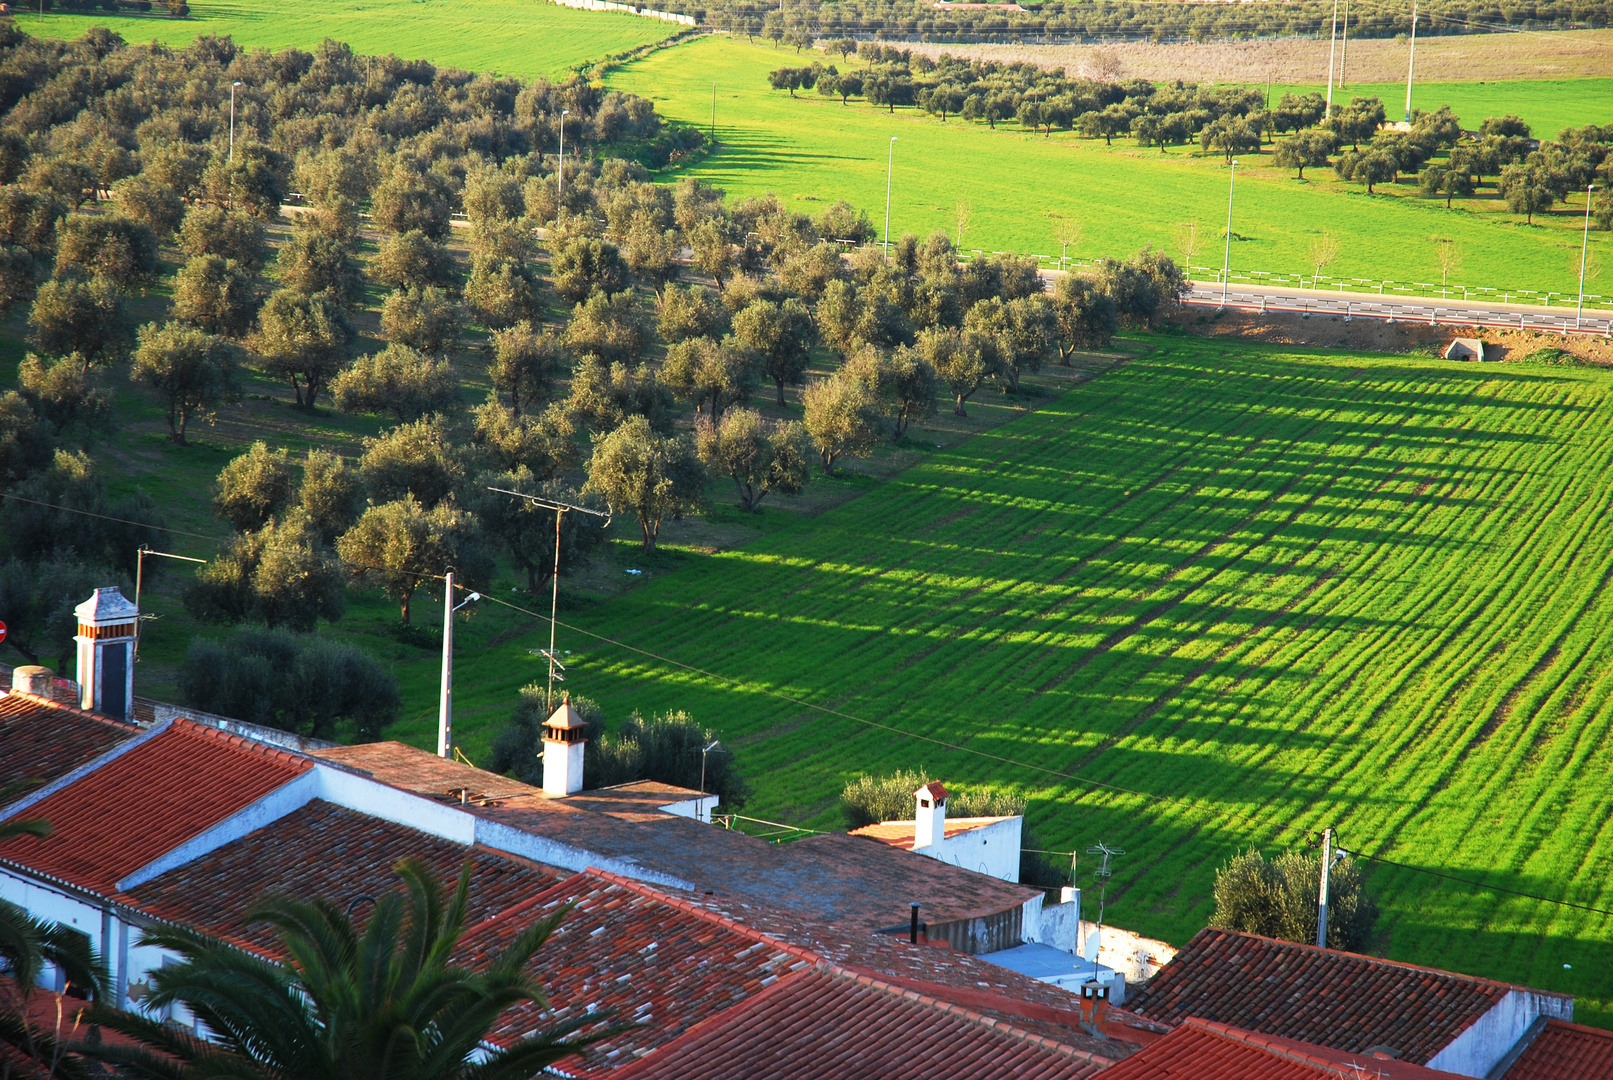 Olivenbäume und ihre Schatten